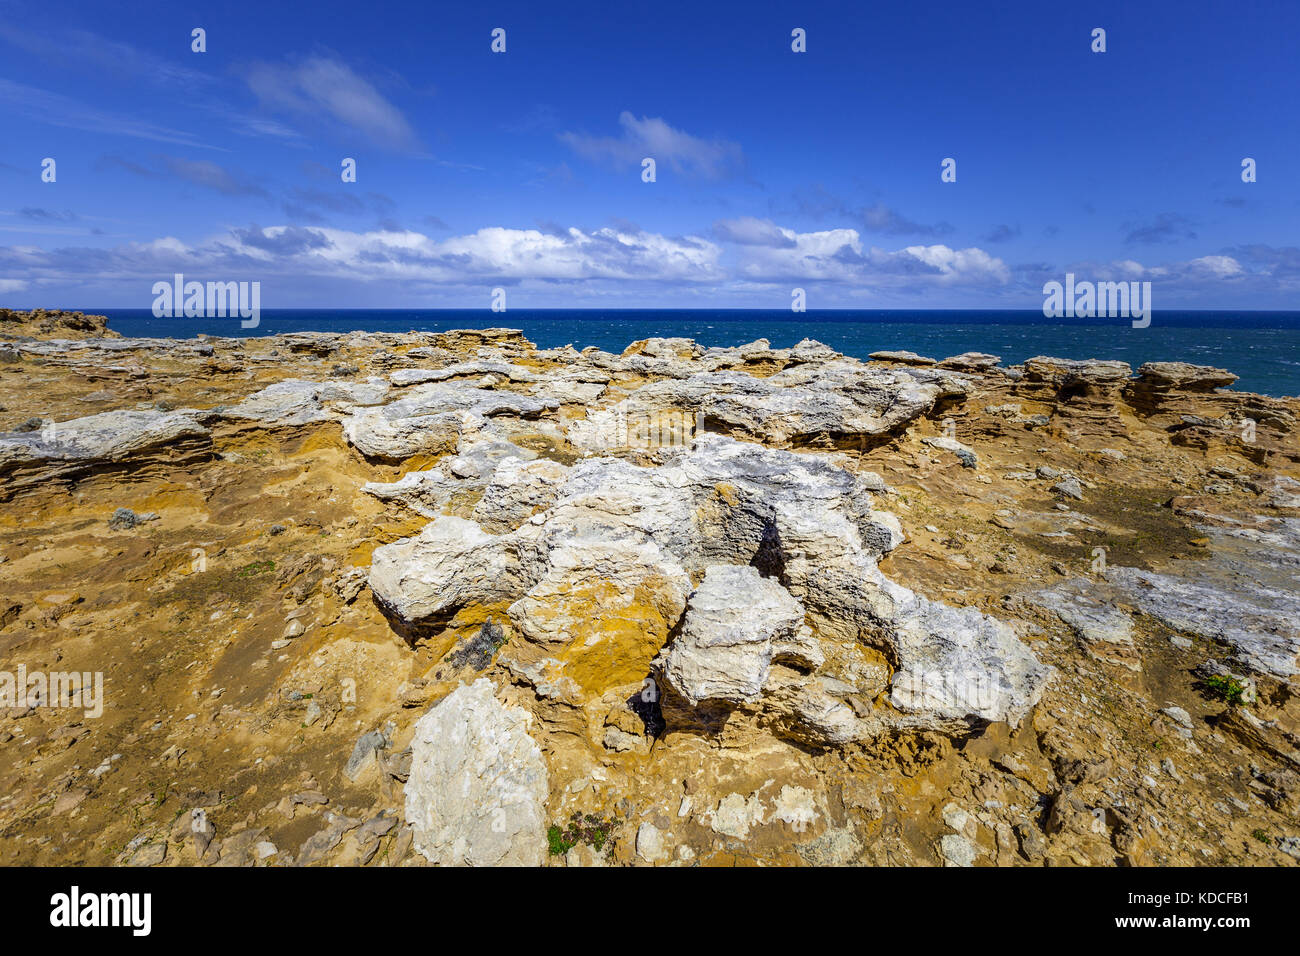 Insolite formazioni di roccia a fascia costiera sull'oceano in australia Foto Stock